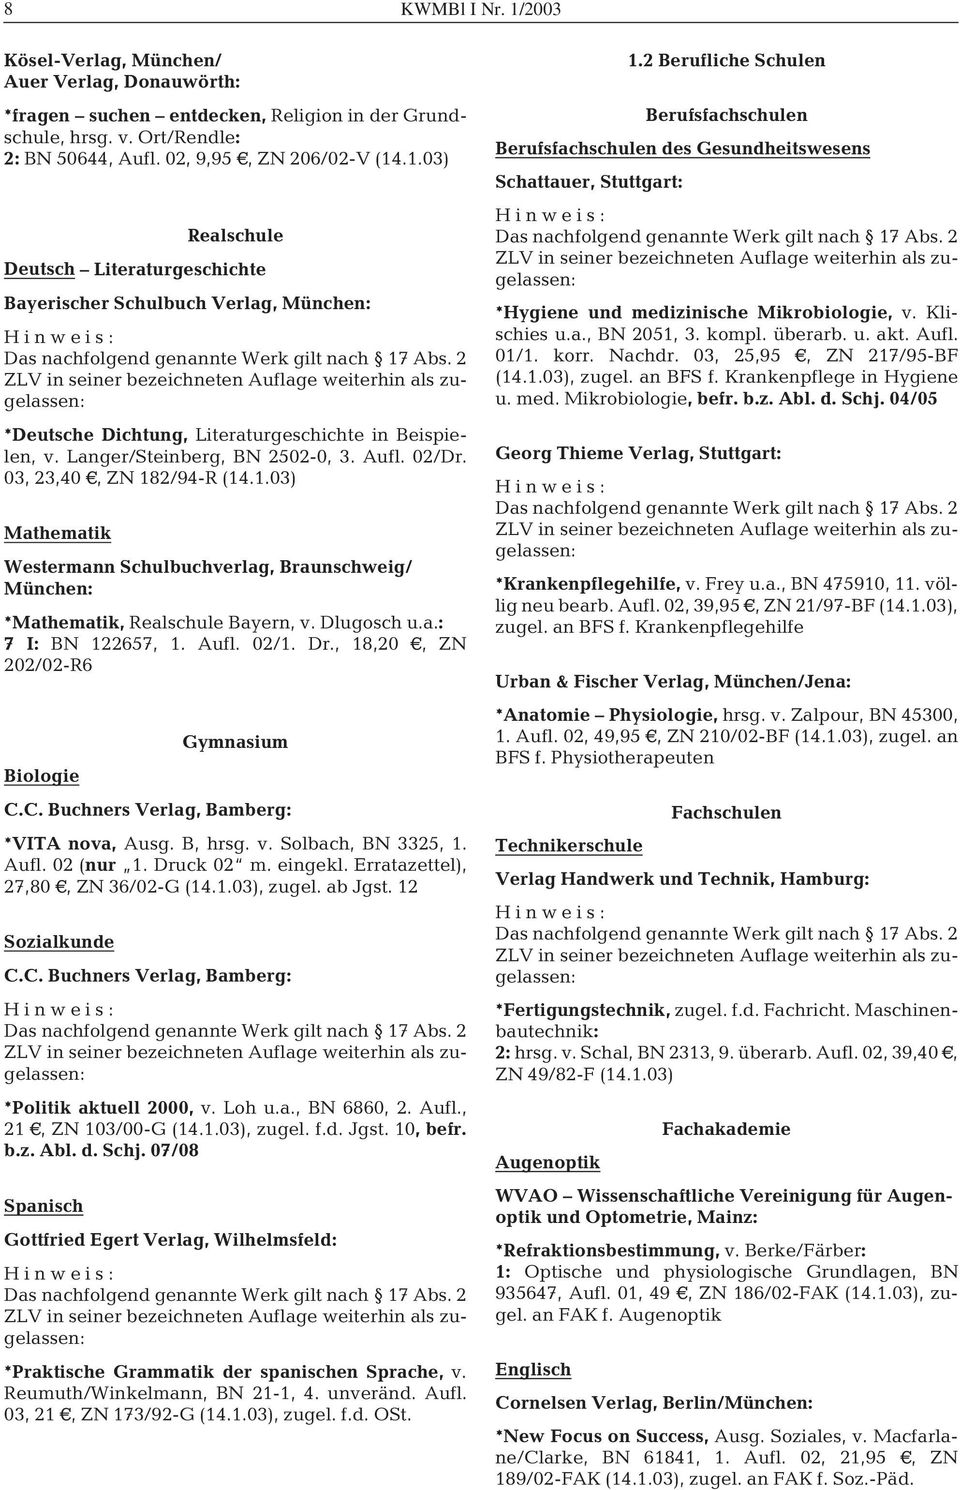 Aufl. 02/1. Dr., 18,20 A, ZN 202/02-R6 Gymnasium Biologie C.C. Buchners Verlag, Bamberg: *VITA nova, Ausg. B, hrsg. v. Solbach, BN 3325, 1. Aufl. 02 (nur 1. Druck 02 m. eingekl.